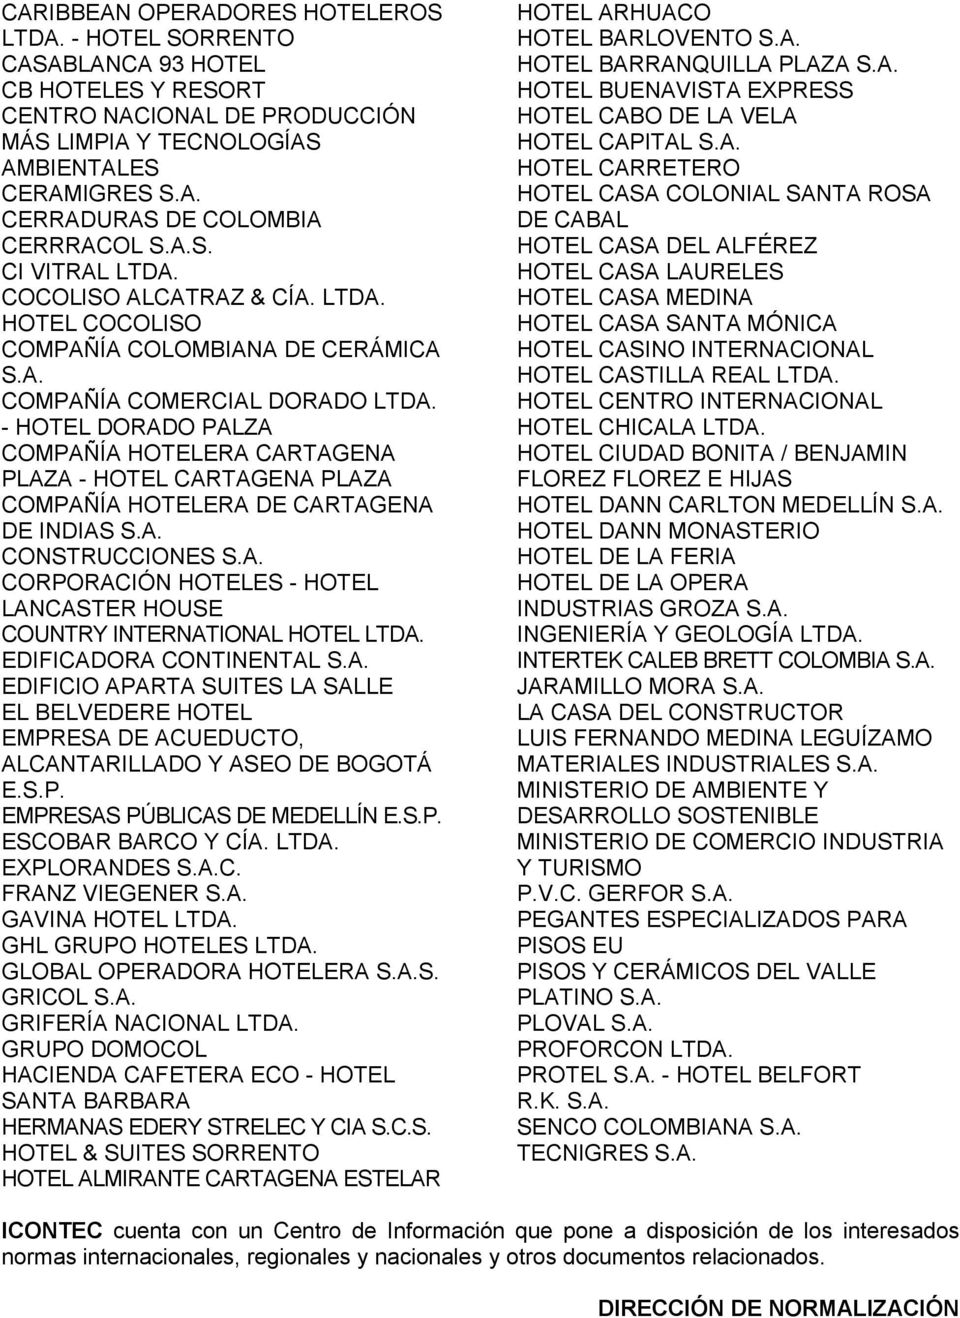 - HOTEL DORADO PALZA COMPAÑÍA HOTELERA CARTAGENA PLAZA - HOTEL CARTAGENA PLAZA COMPAÑÍA HOTELERA DE CARTAGENA DE INDIAS S.A. CONSTRUCCIONES S.A. CORPORACIÓN HOTELES - HOTEL LANCASTER HOUSE COUNTRY INTERNATIONAL HOTEL LTDA.